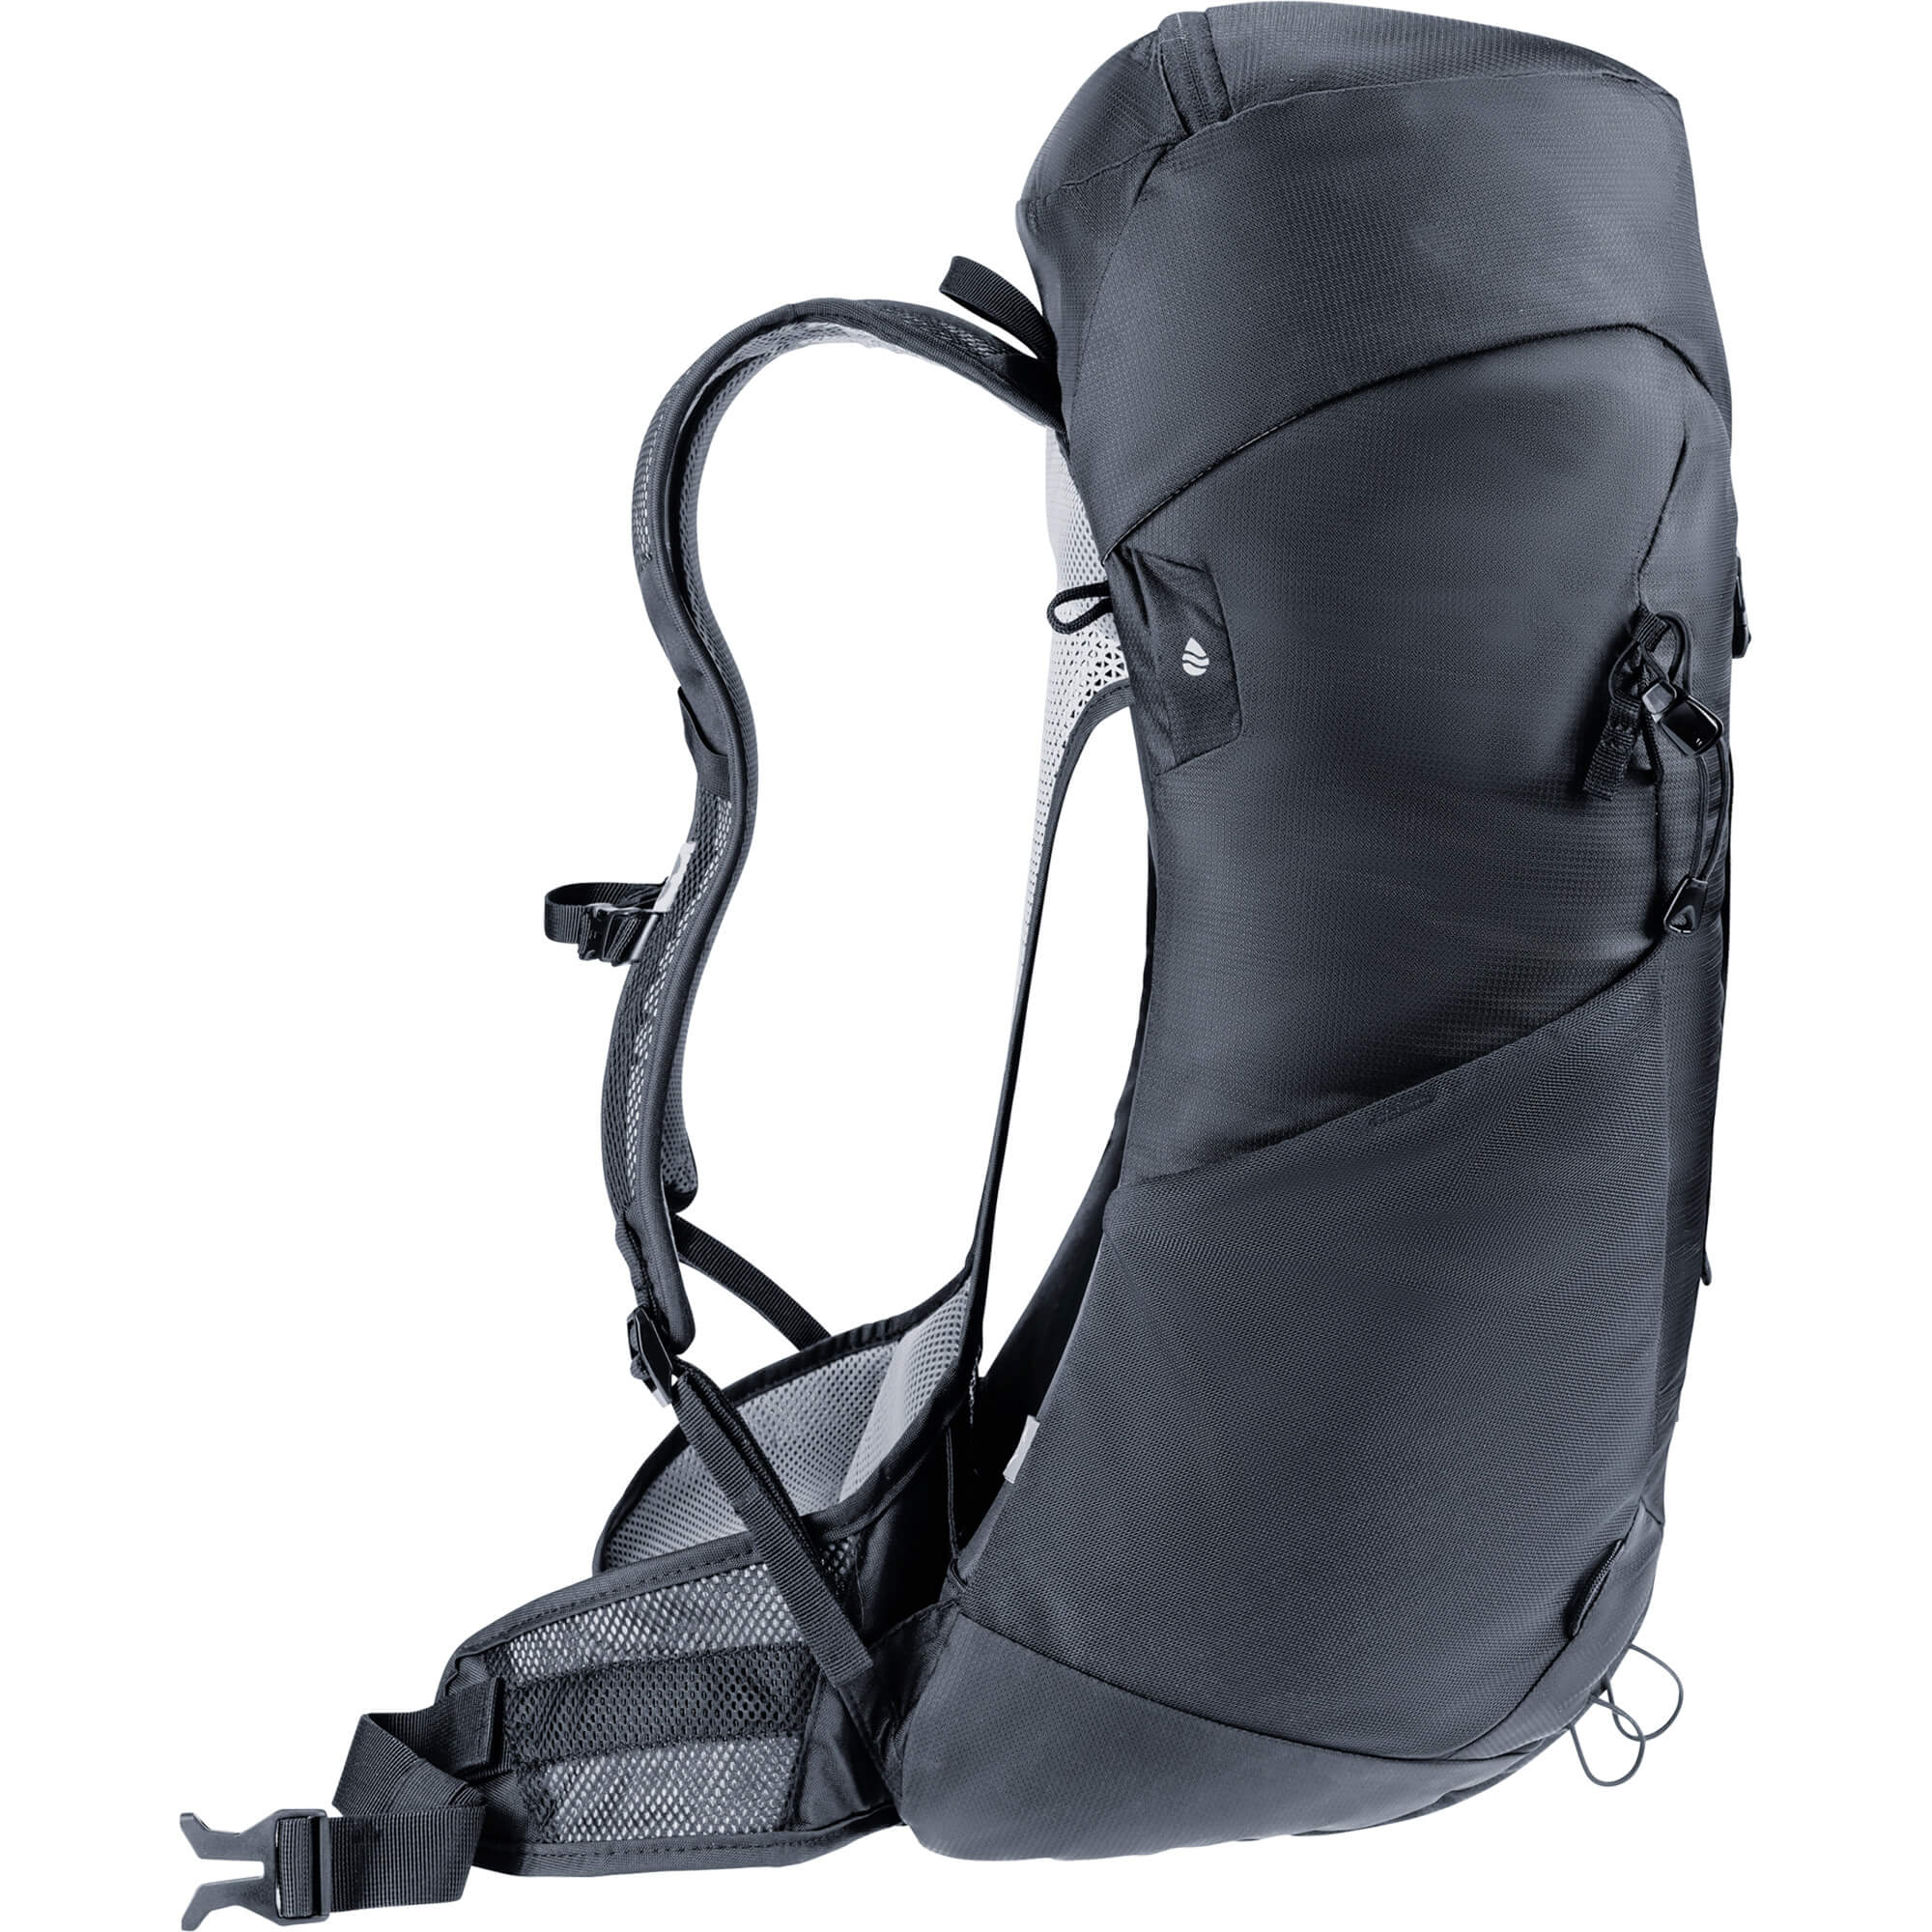 Deuter AC Lite 32 EL Daypack/Hiking Backpack